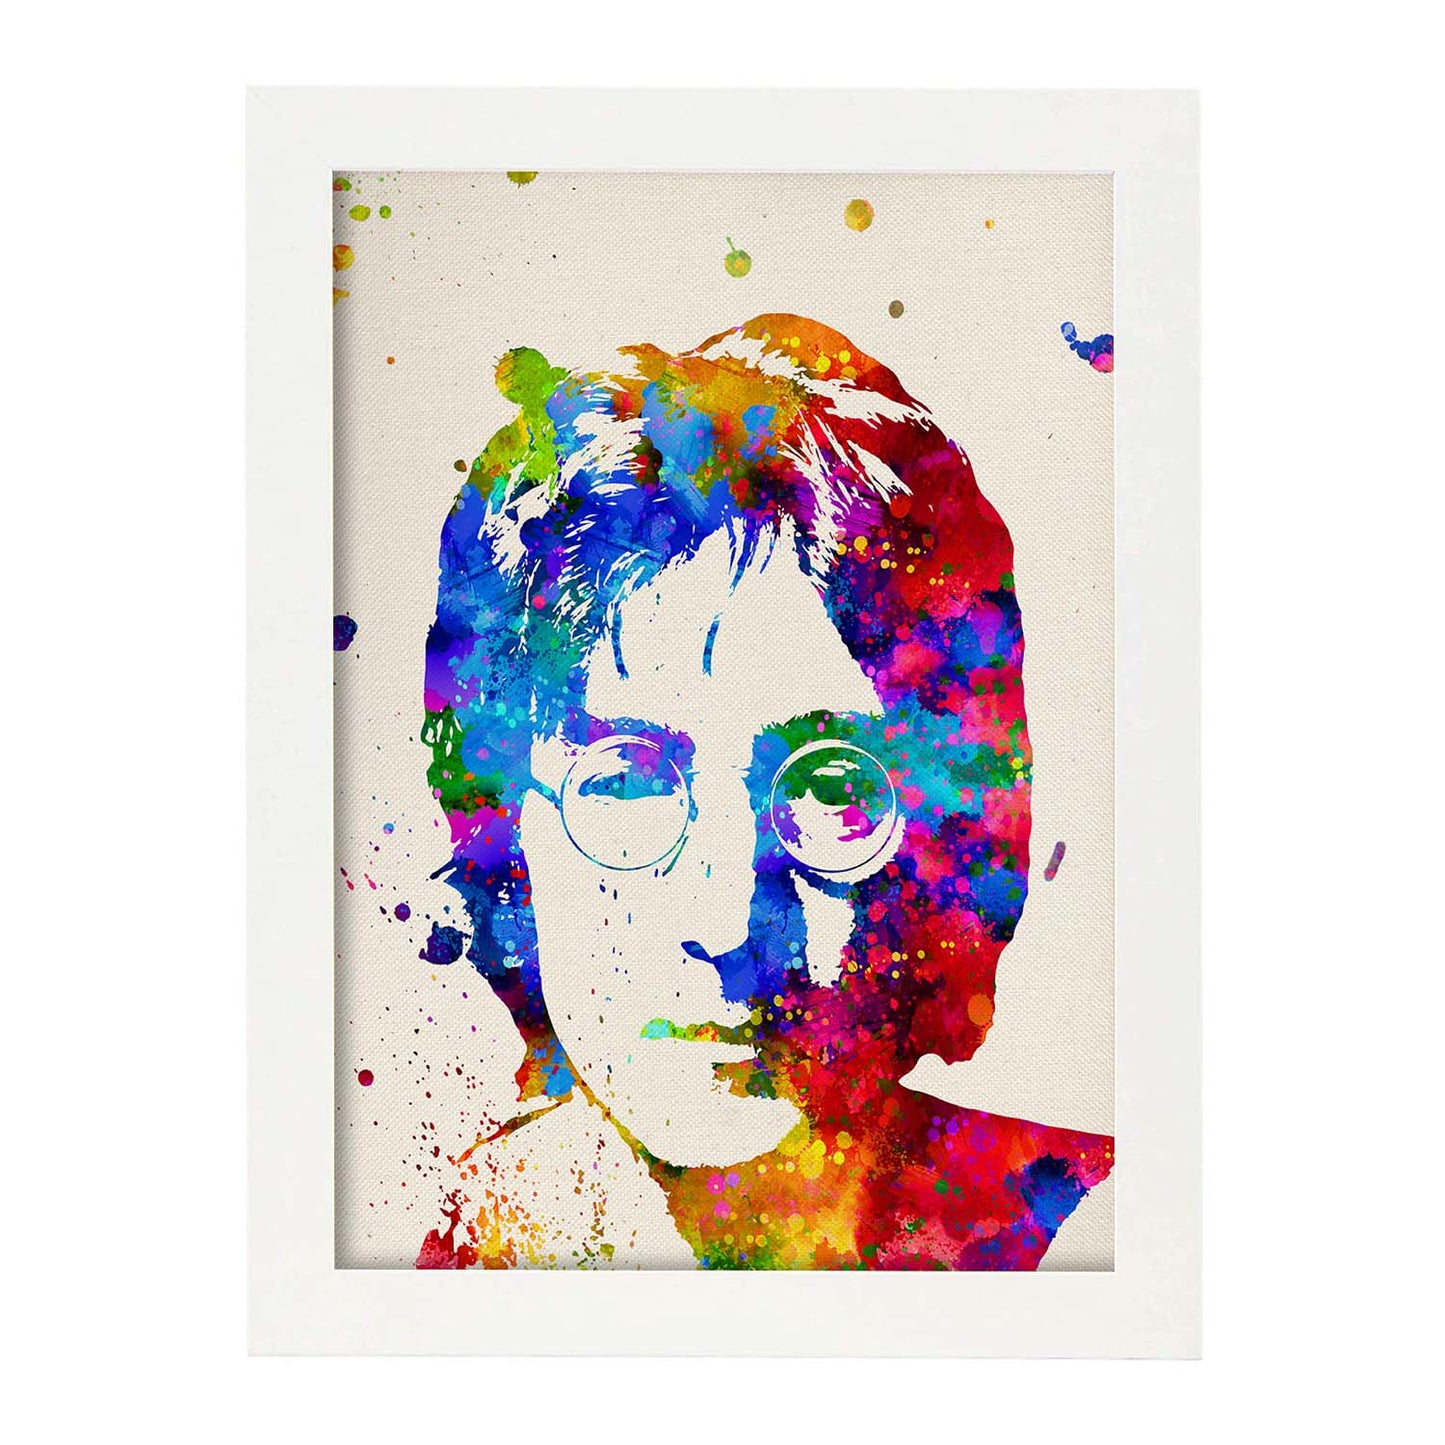 Poster imagen de John Lennon. Posters con diseño acuarela de famosos, actores, músicos-Artwork-Nacnic-A4-Marco Blanco-Nacnic Estudio SL